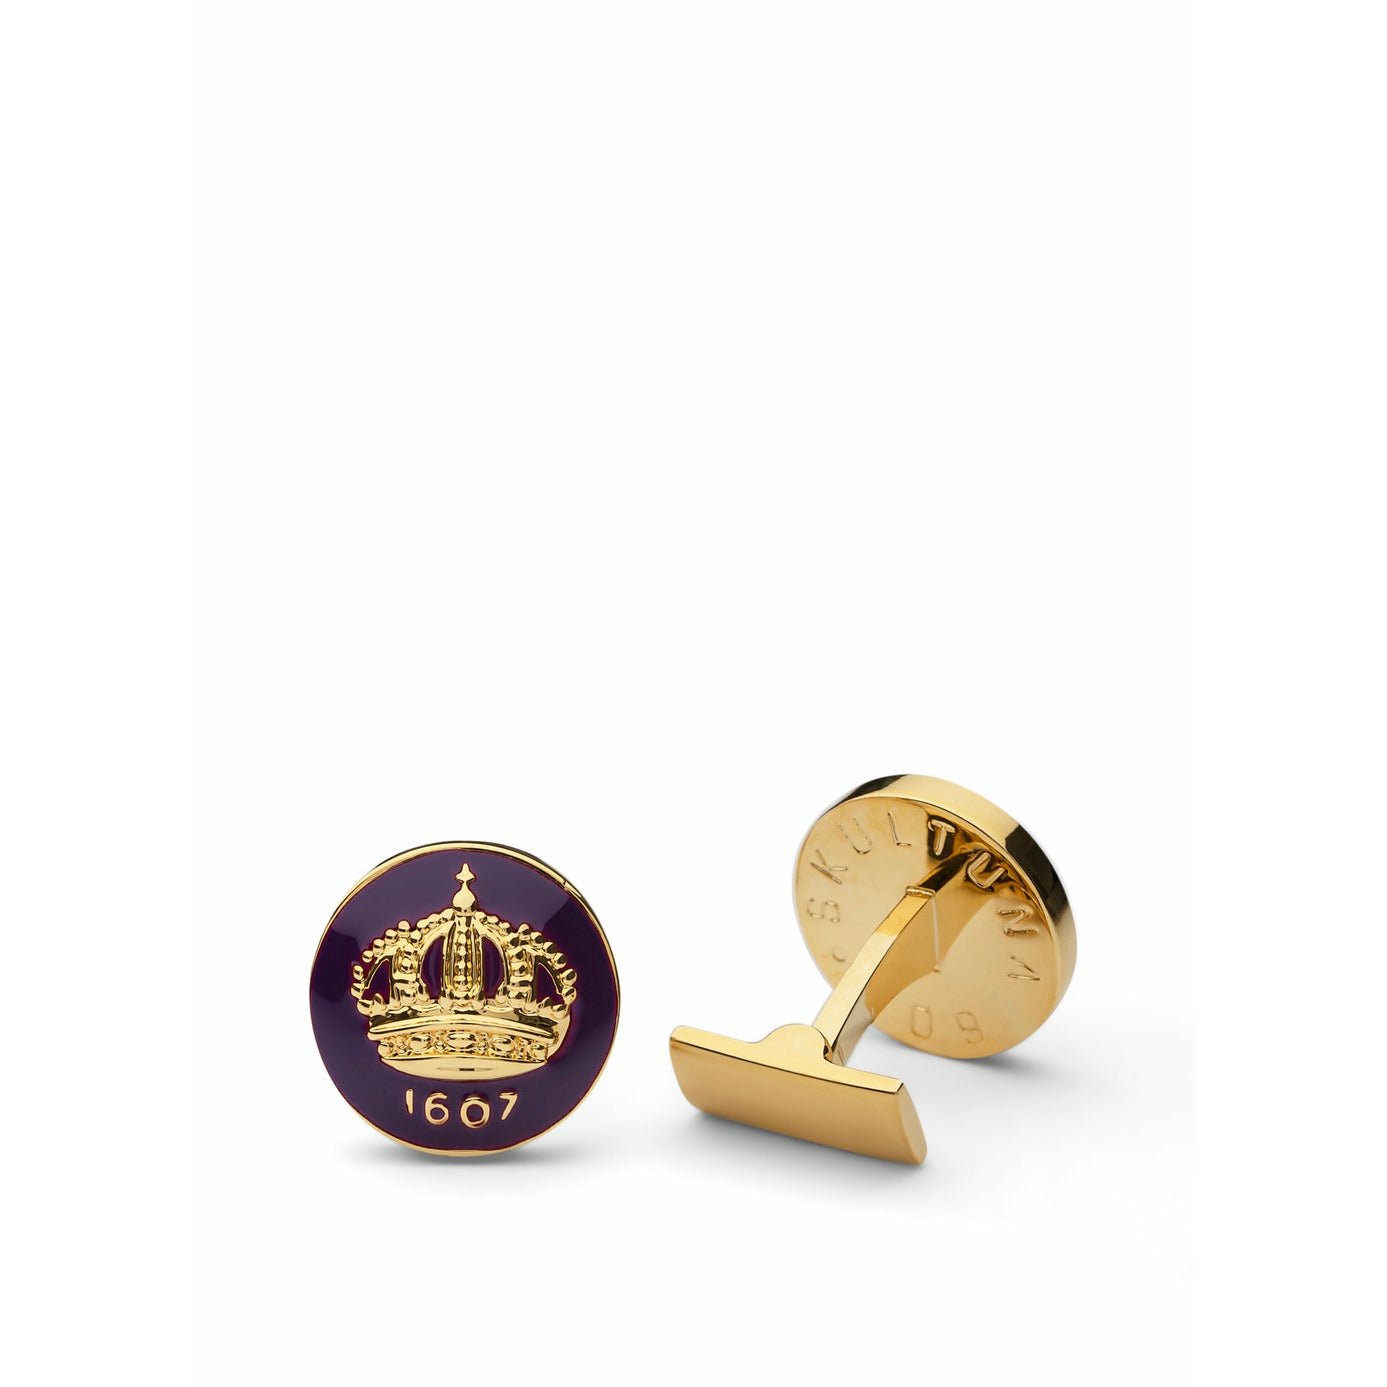 Skultuna Crown Gold Manschettenknopf ø1,7 Cm, Pfalzviolett